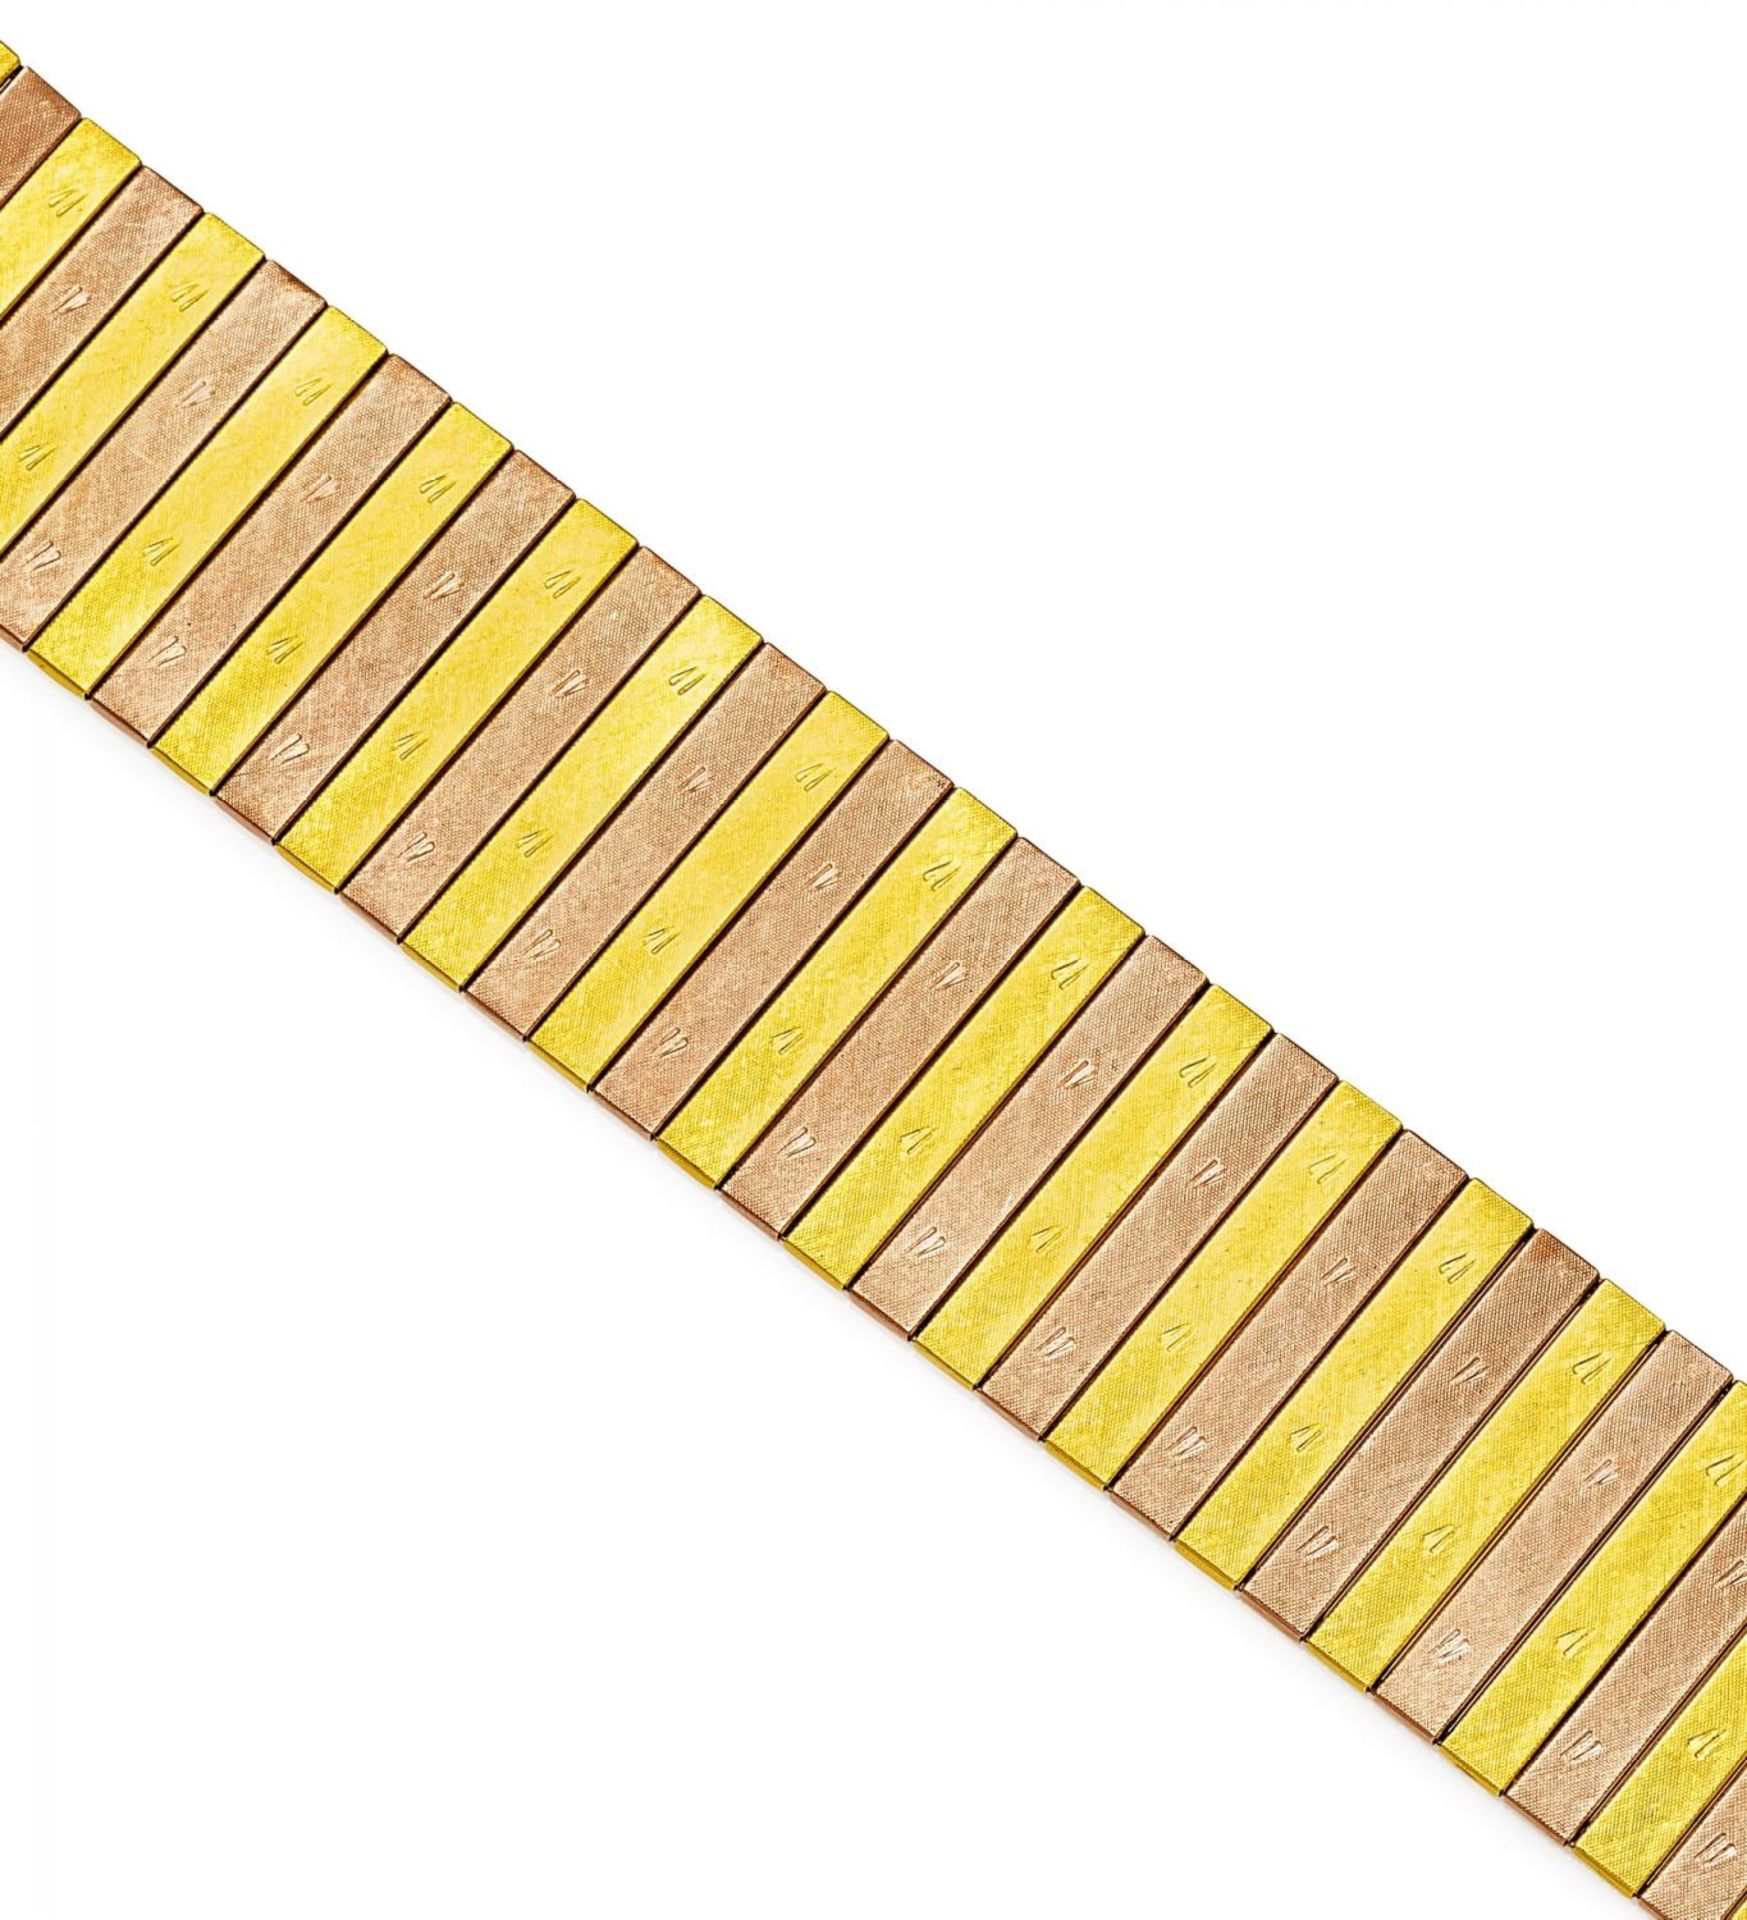 GOLD-ARMBAND. Deutschland, um 1970. 585/- Gelb-/Rotgold, Gesamtgewicht: 58,0g. L. 19,5cm. Rückseitig